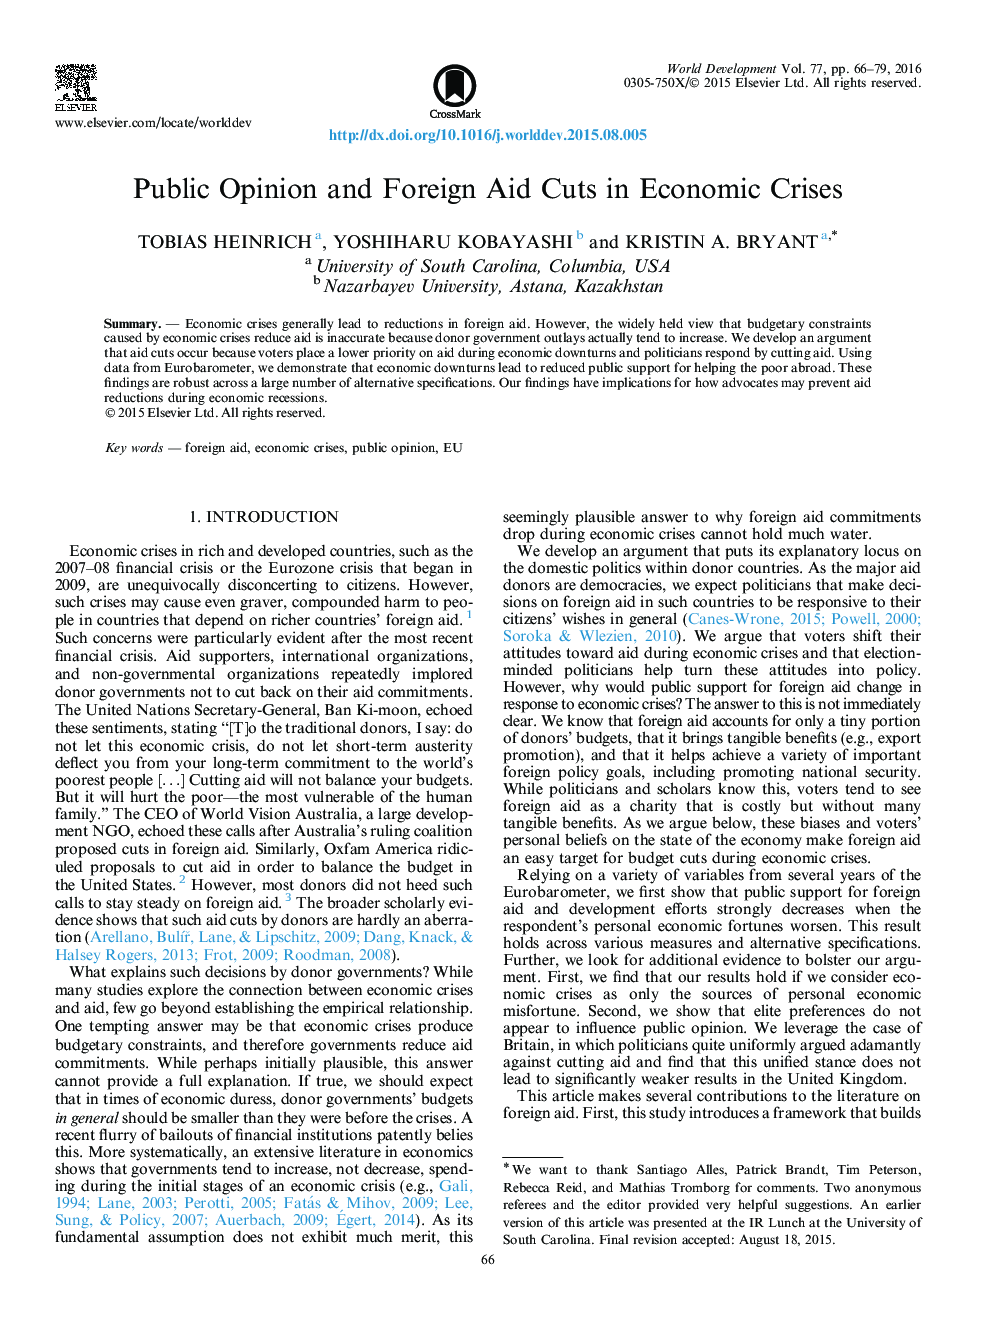 دیدگاه عمومی و کمک خارجی در زمینه بحران اقتصادی کاهش می یابد 